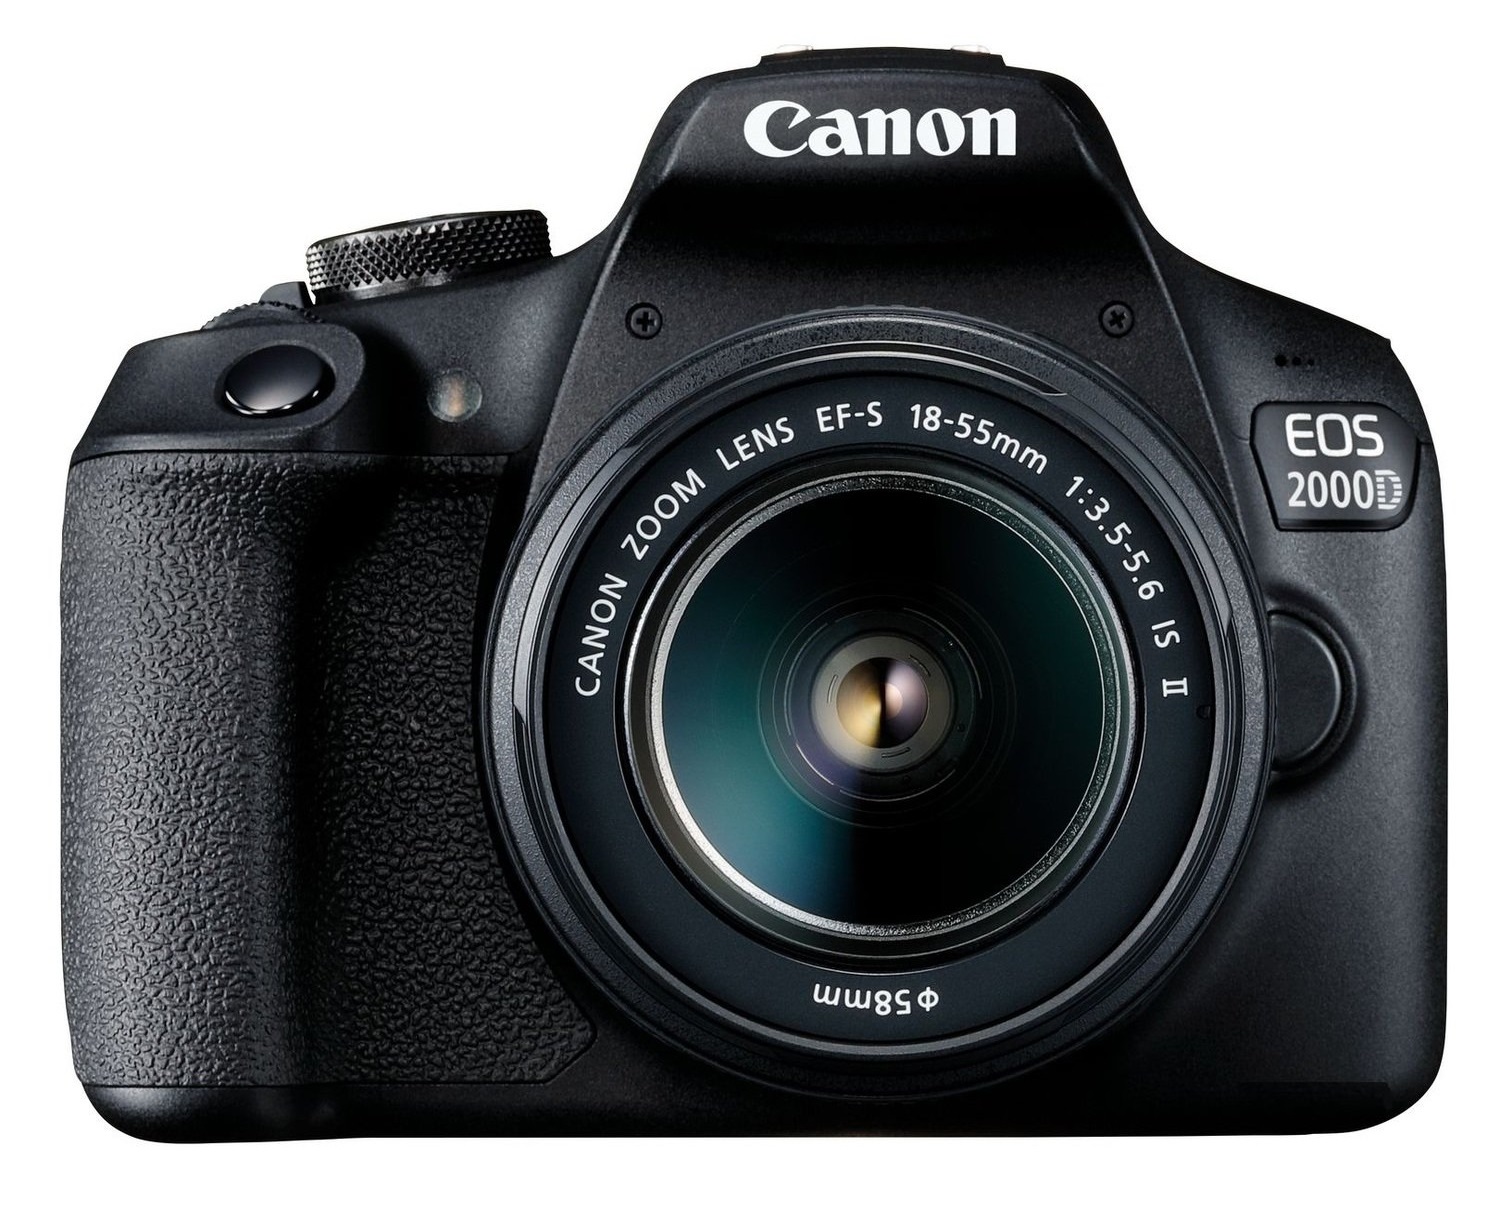 Фотоаппарат CANON EOS 2000D kit 18-55 IS II SB130 SD16GB Black (2728C015) в Киеве